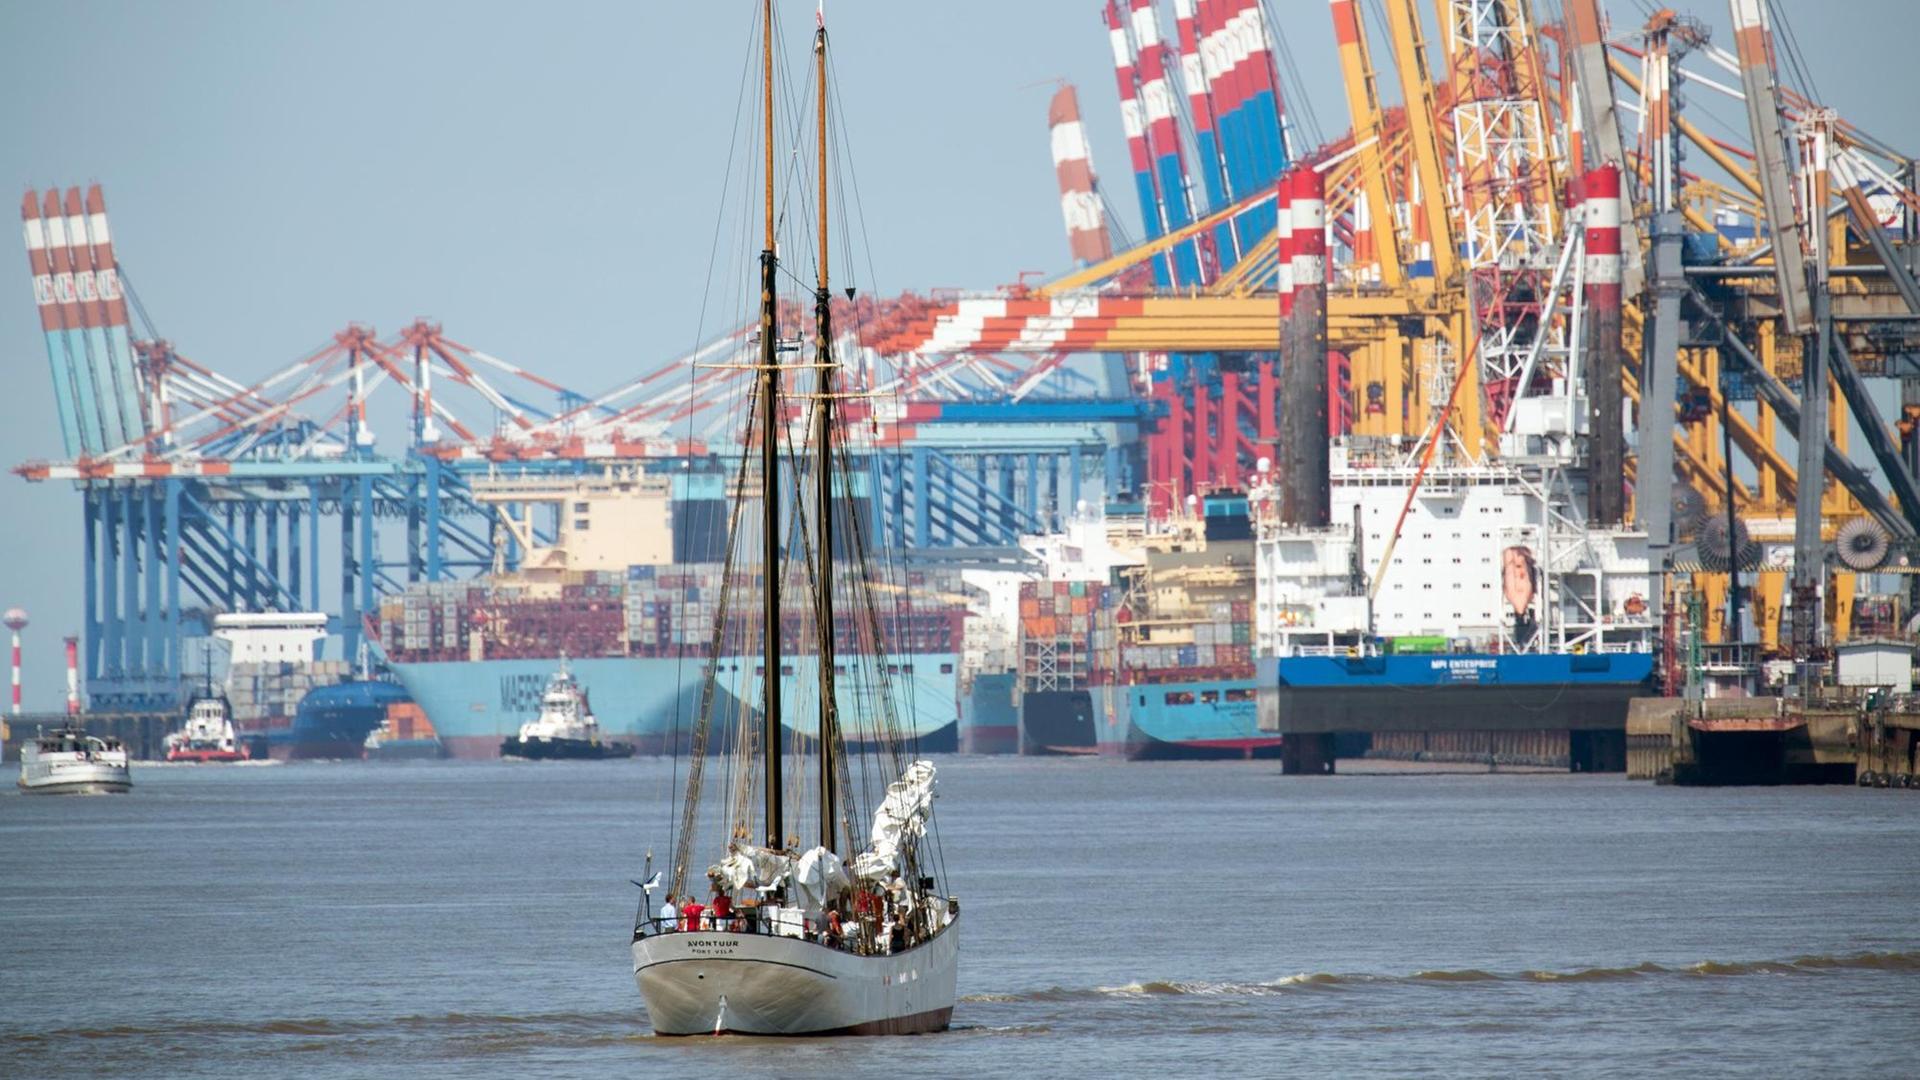 Der Frachtsegler "Avontuur" fährt am 28.07.2016 auf der Weser in Bremerhaven auf den Container-Terminal in Bremerhaven zu. Der 44 Meter lange Gaffelschoner von 1920 soll zukünftig umweltschonend unter Segeln Frachten transportieren. Er kann 70 Tonnen Ladung aufnehmen.